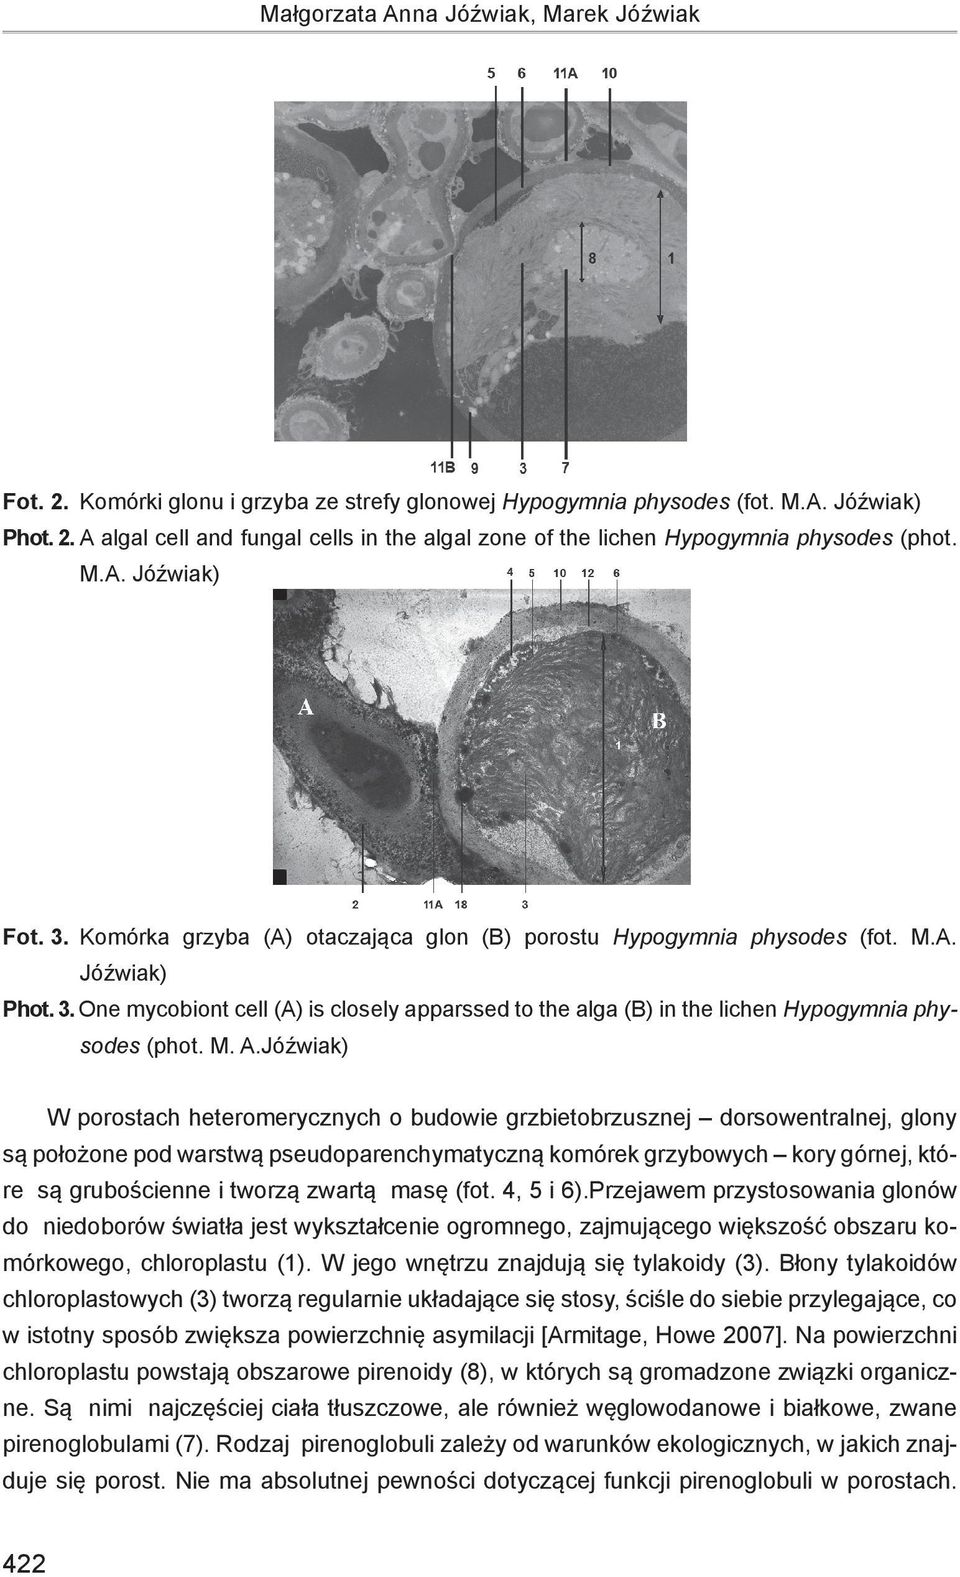 M. A.Jóźwiak) W porostach heteromerycznych o budowie grzbietobrzusznej dorsowentralnej, glony są położone pod warstwą pseudoparenchymatyczną komórek grzybowych kory górnej, które są grubościenne i